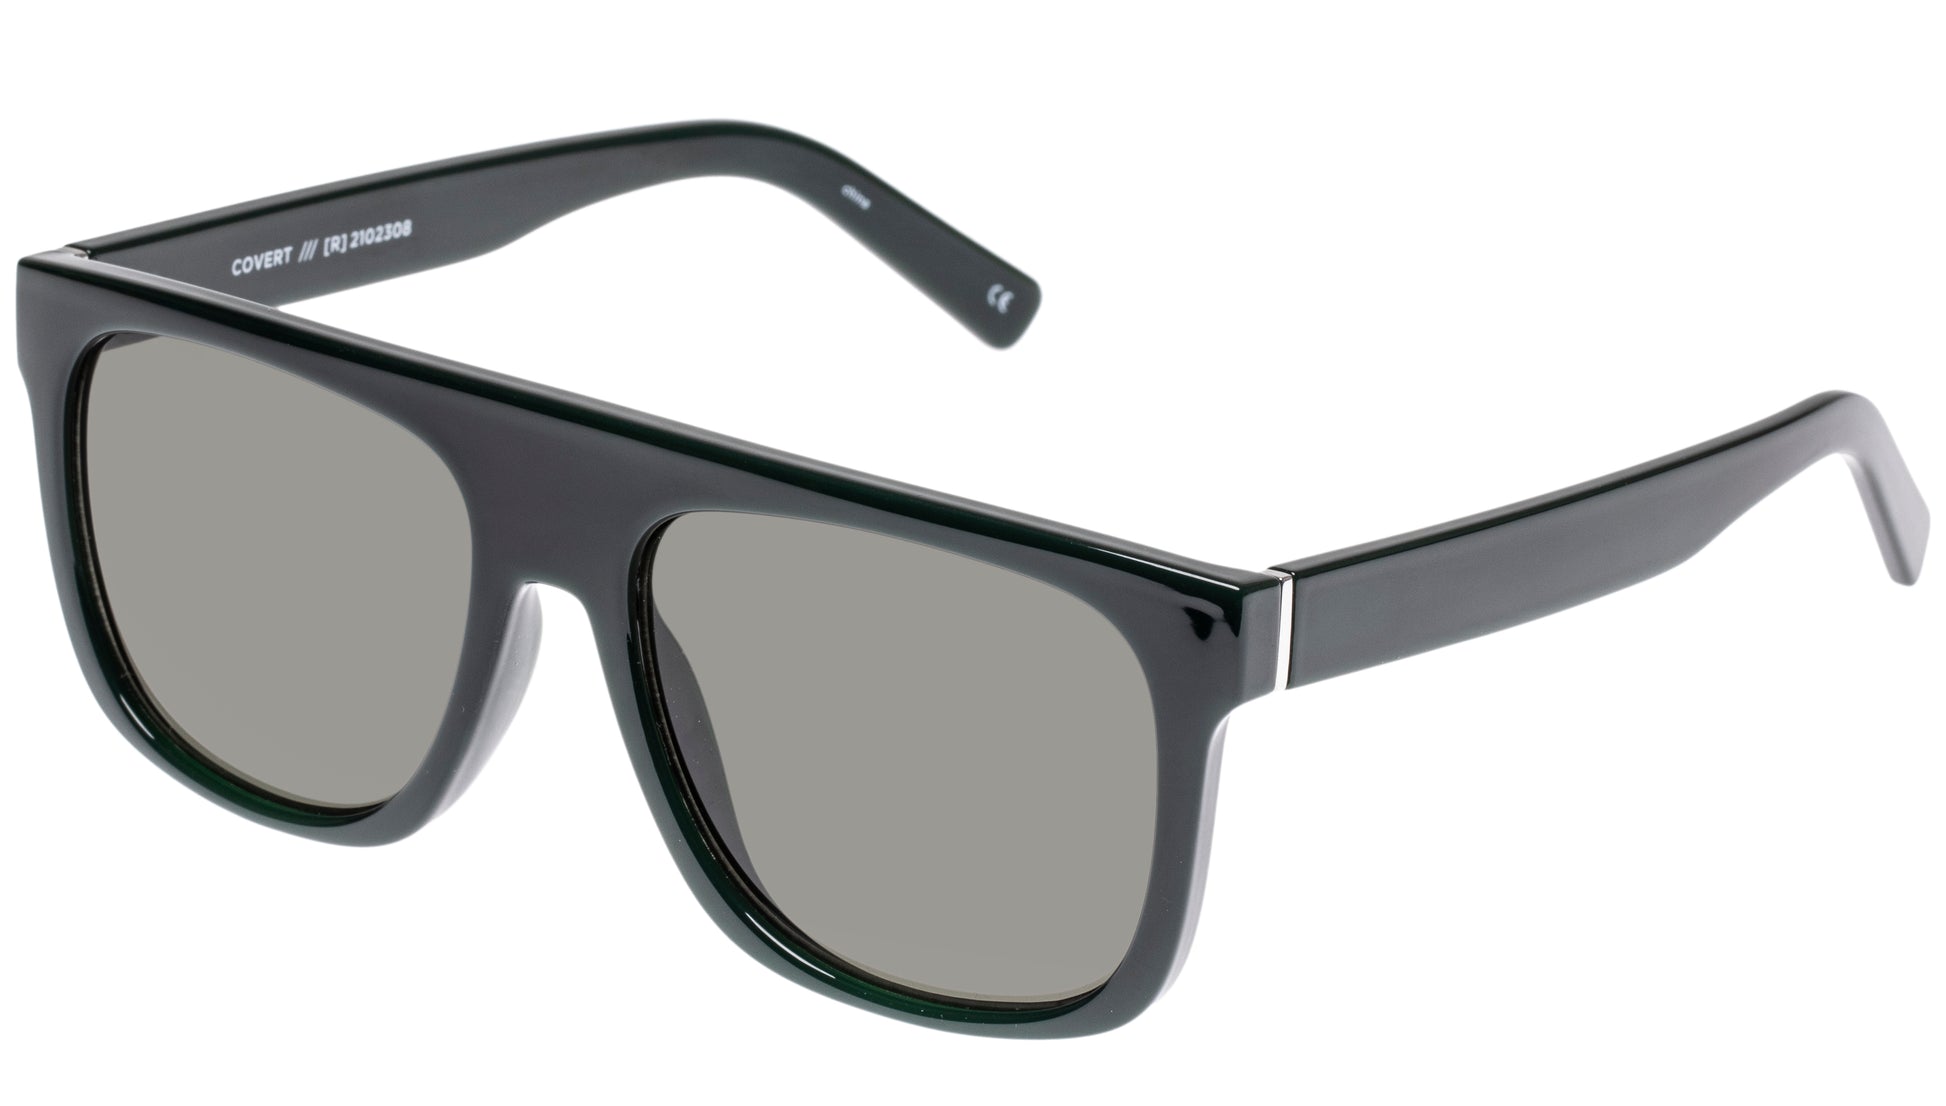 Picture of the Le Spec Covert Khaki Sunglasses - CT Grace